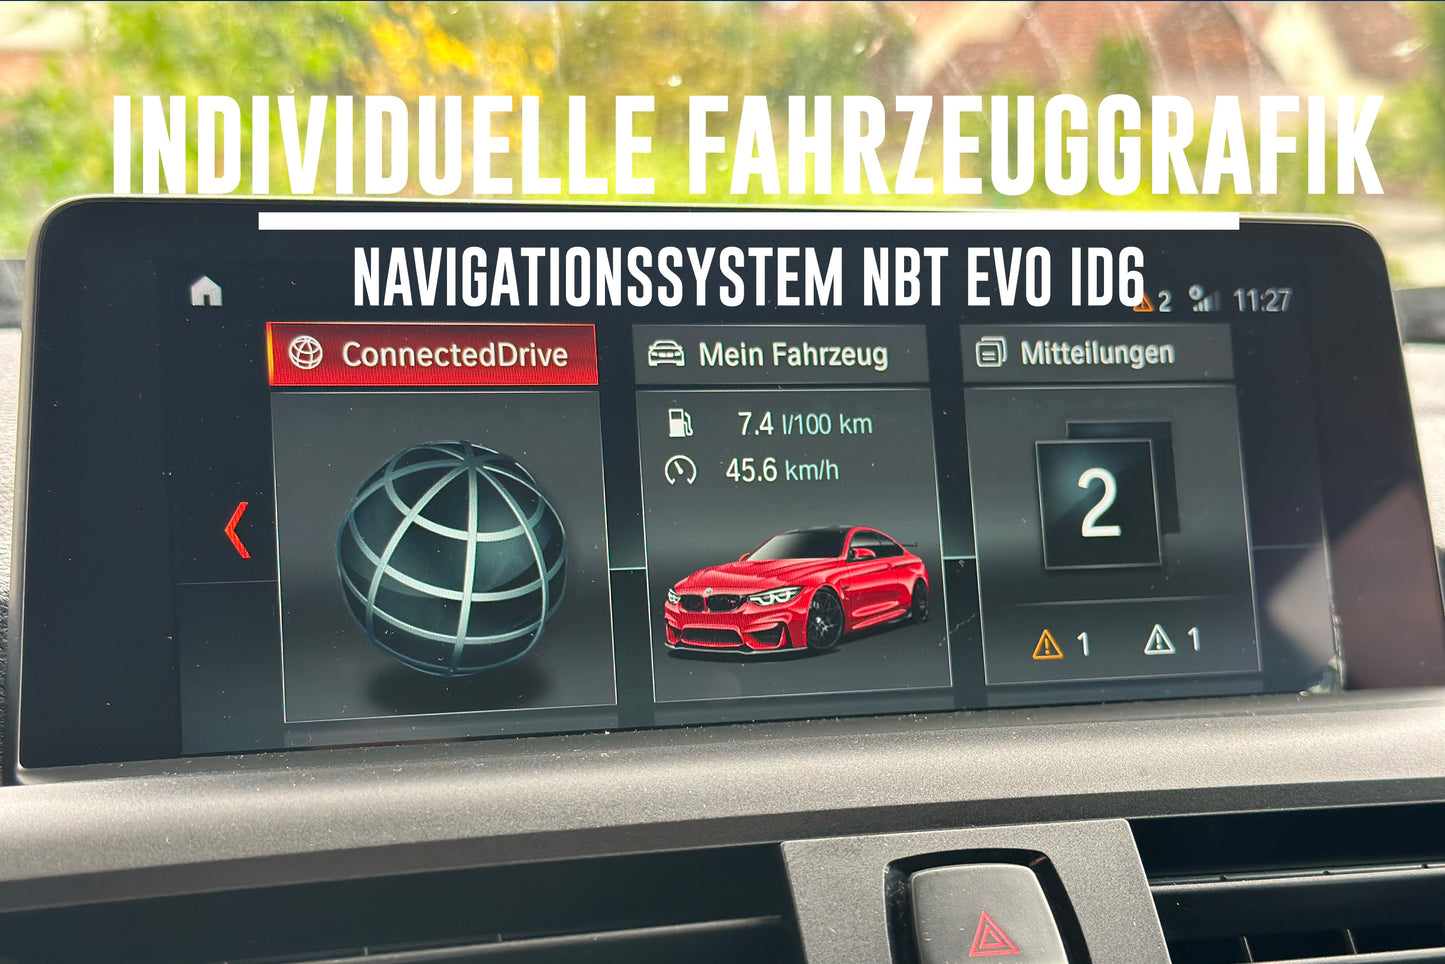 Individuelle Fahrzeuggrafik für BMW Navigationssystem NBT Evo ID6